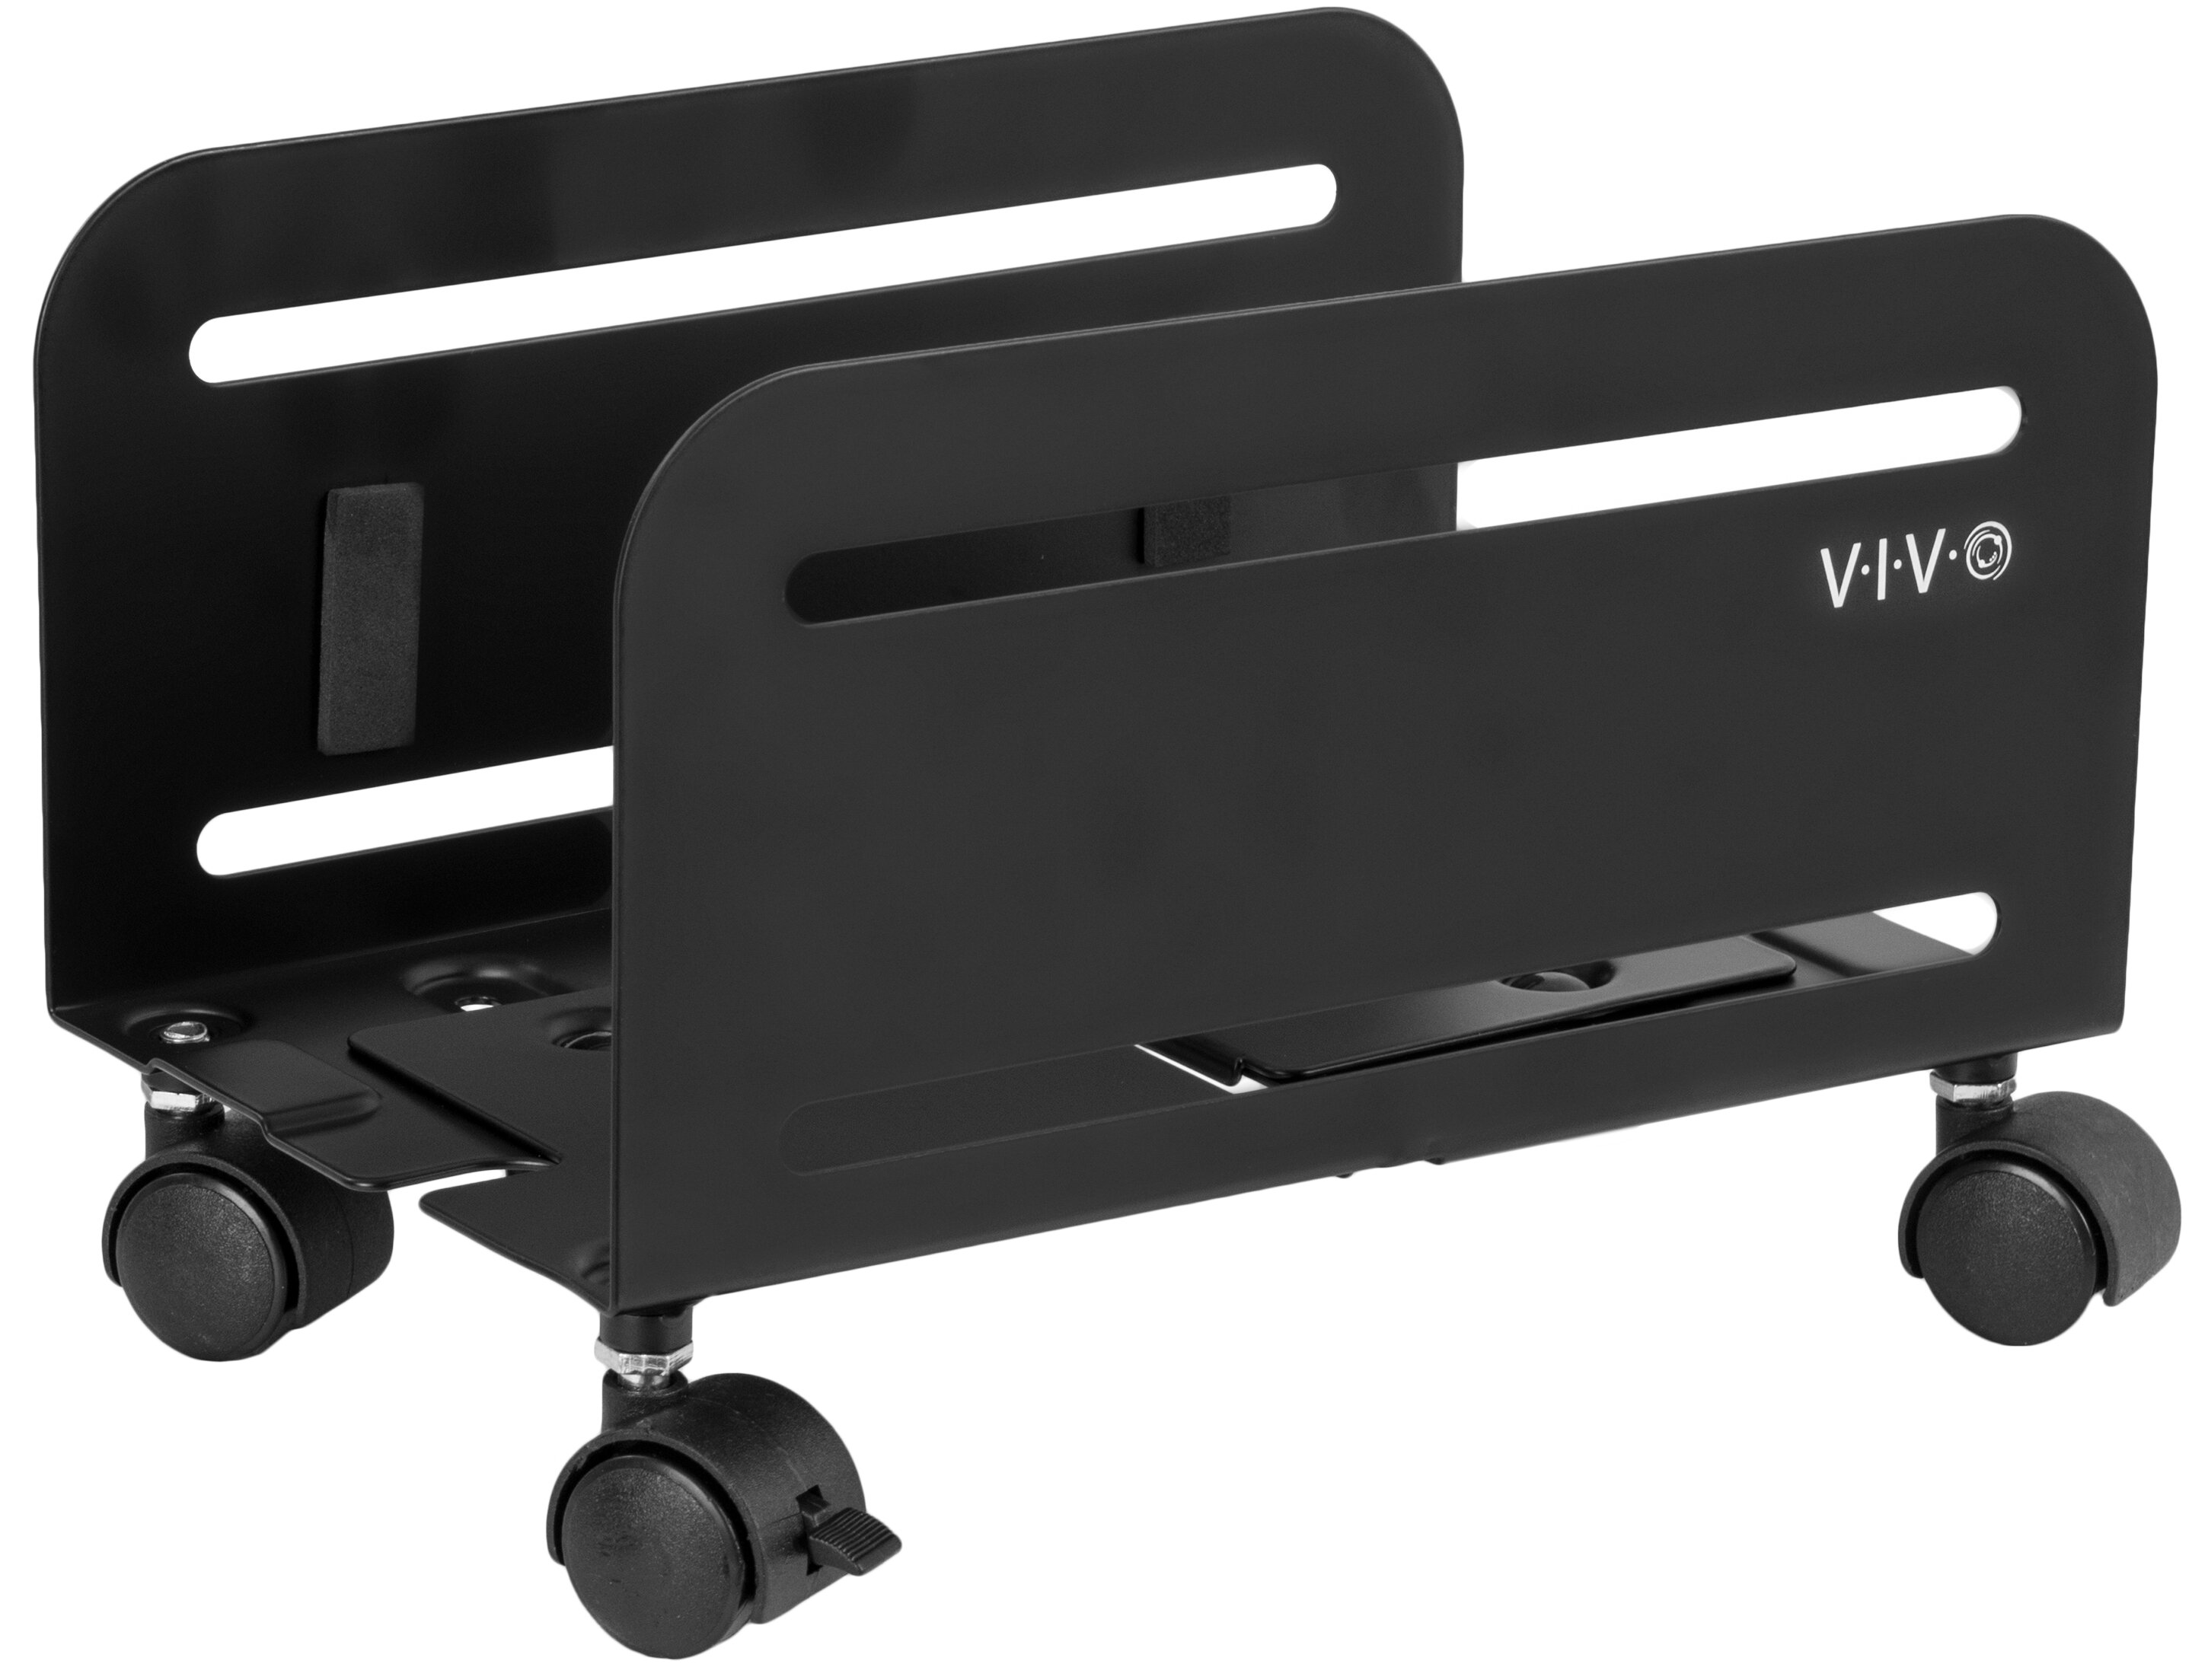 Black Mobile PC Adjustable Desktop Computer Stand Trolley 